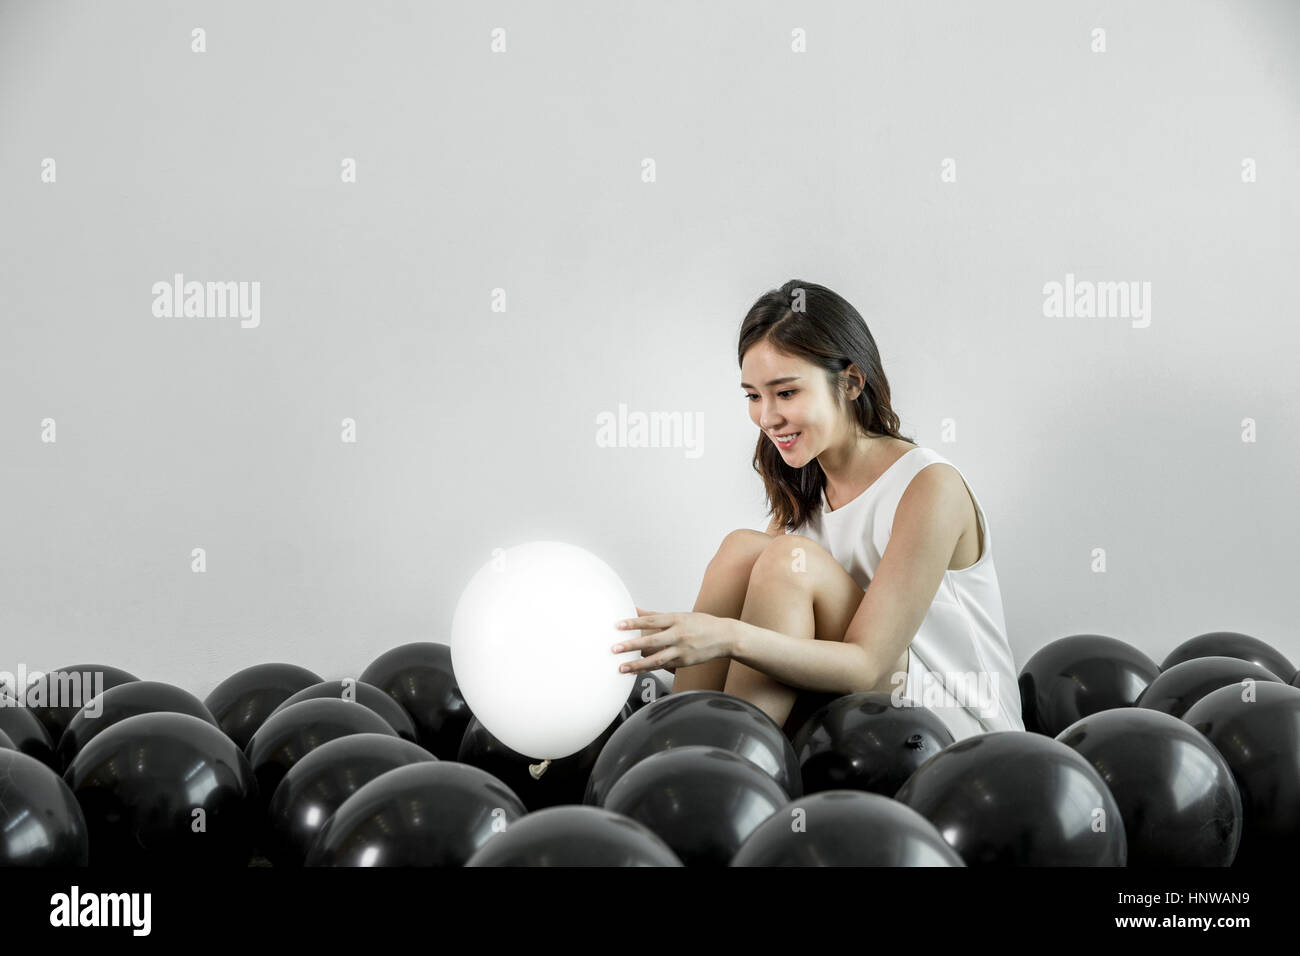 Junge Frau zu finden, weiße Ballon unter schwarzen Stockfoto